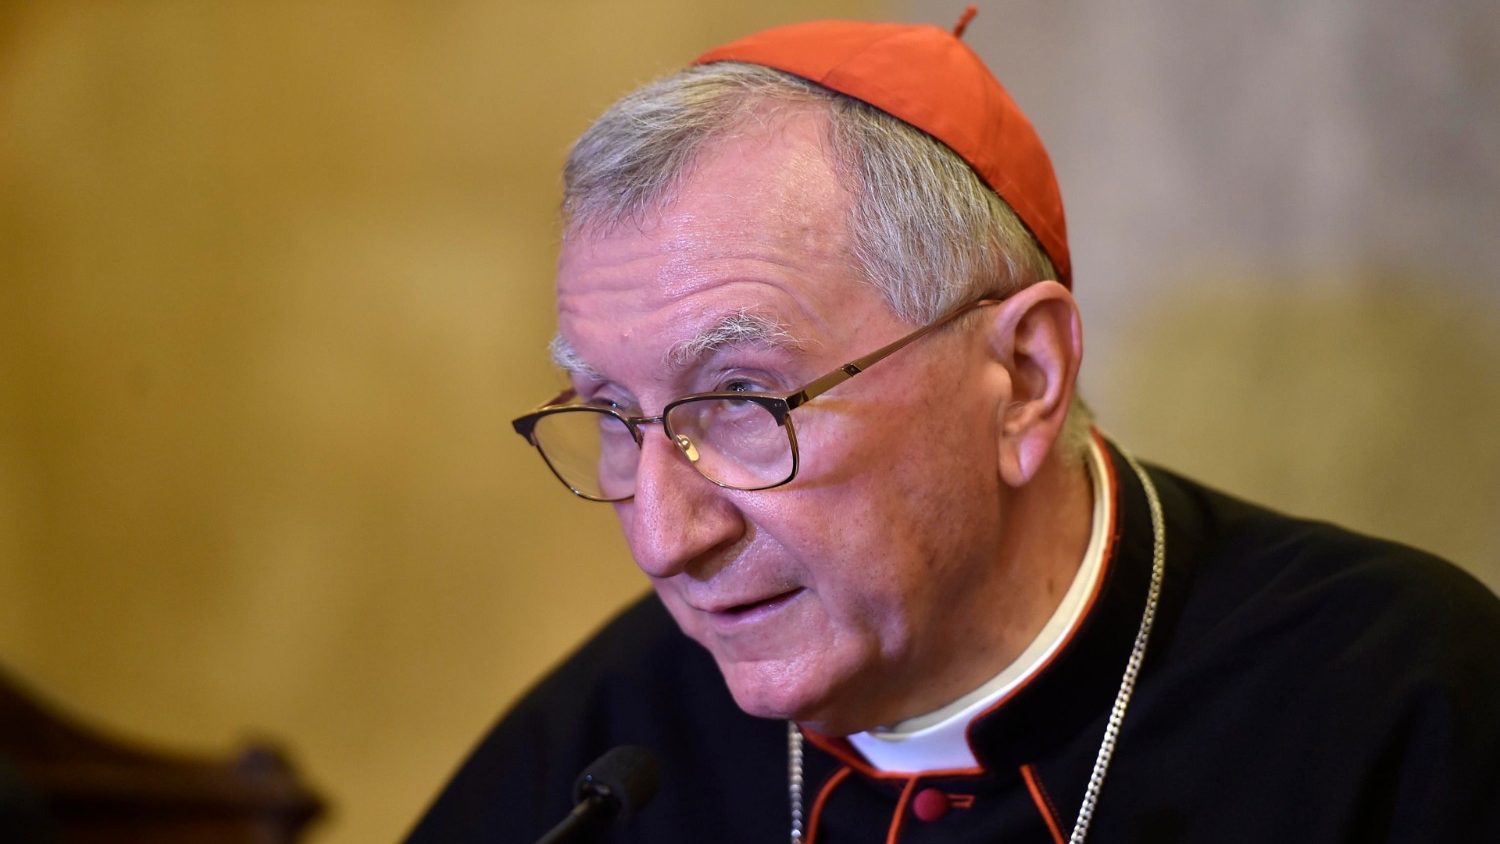 Giingon ni Cardinal Parolin nga determinado si Pope Francis nga moadto sa Iraq